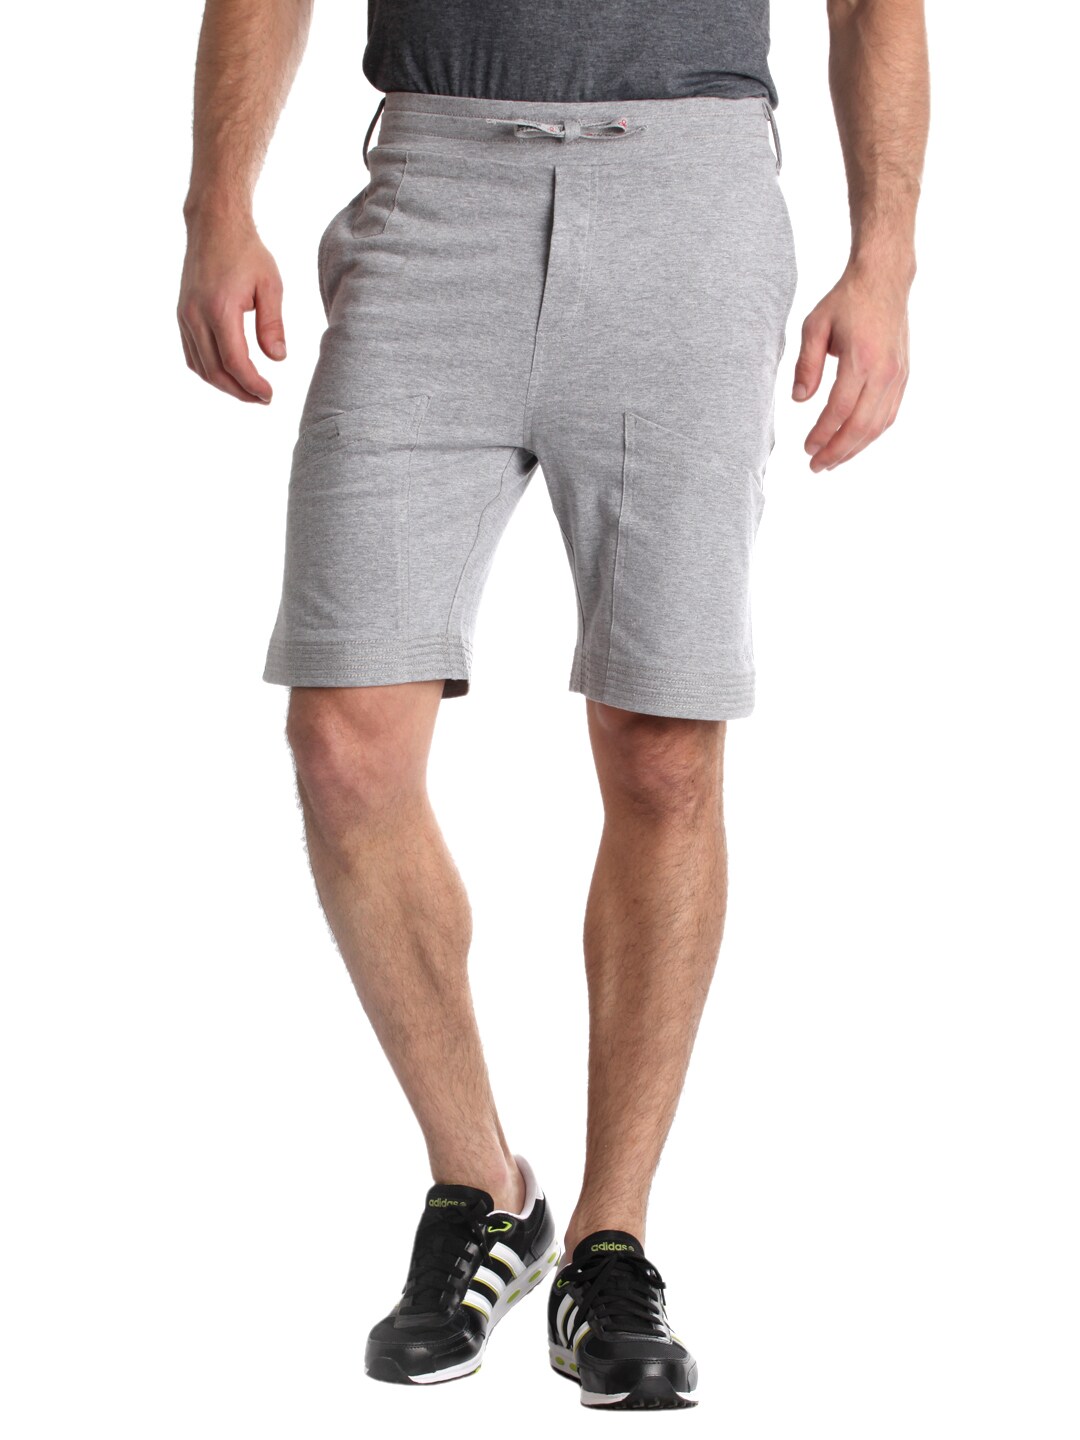 Urban Yoga Men Grey Shorts